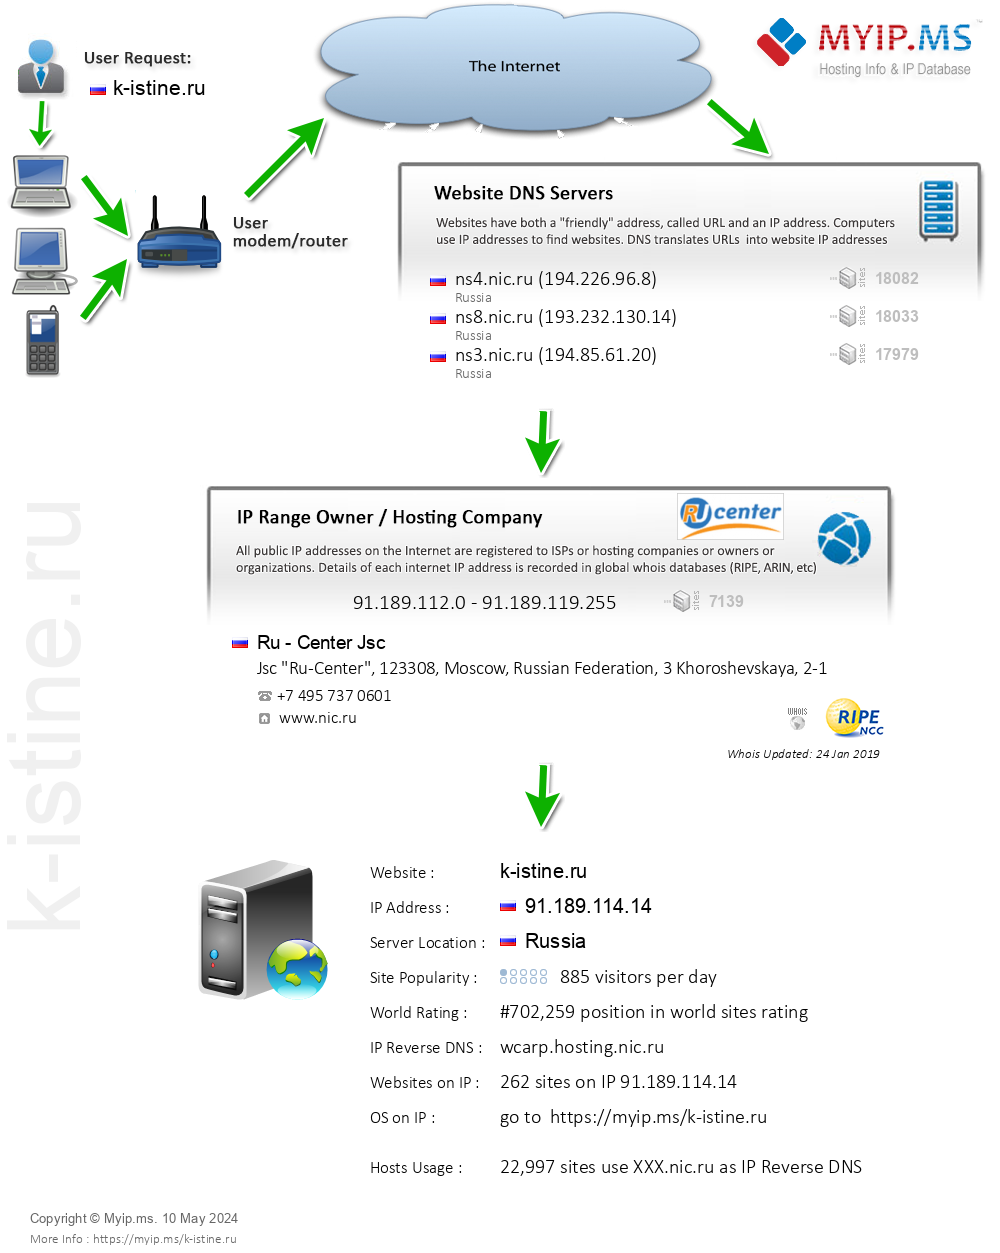 K-istine.ru - Website Hosting Visual IP Diagram